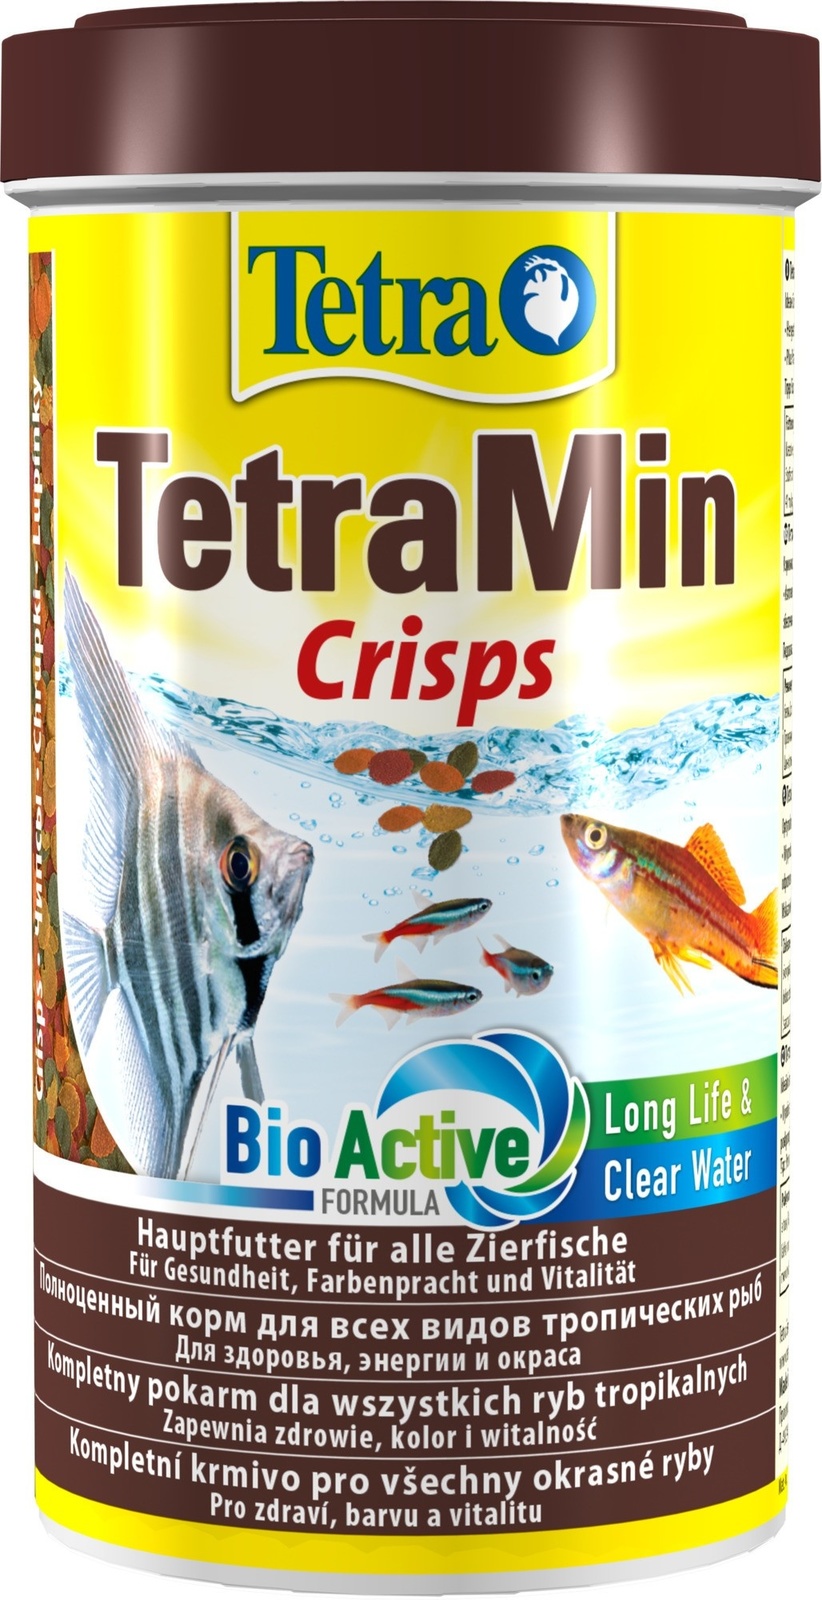 Tetra (корма) Tetra (корма) корм для всех видов тропических рыб, чипсы (110 г) tetra корма tetra корма корм для всех видов рыб хлопья 20 г